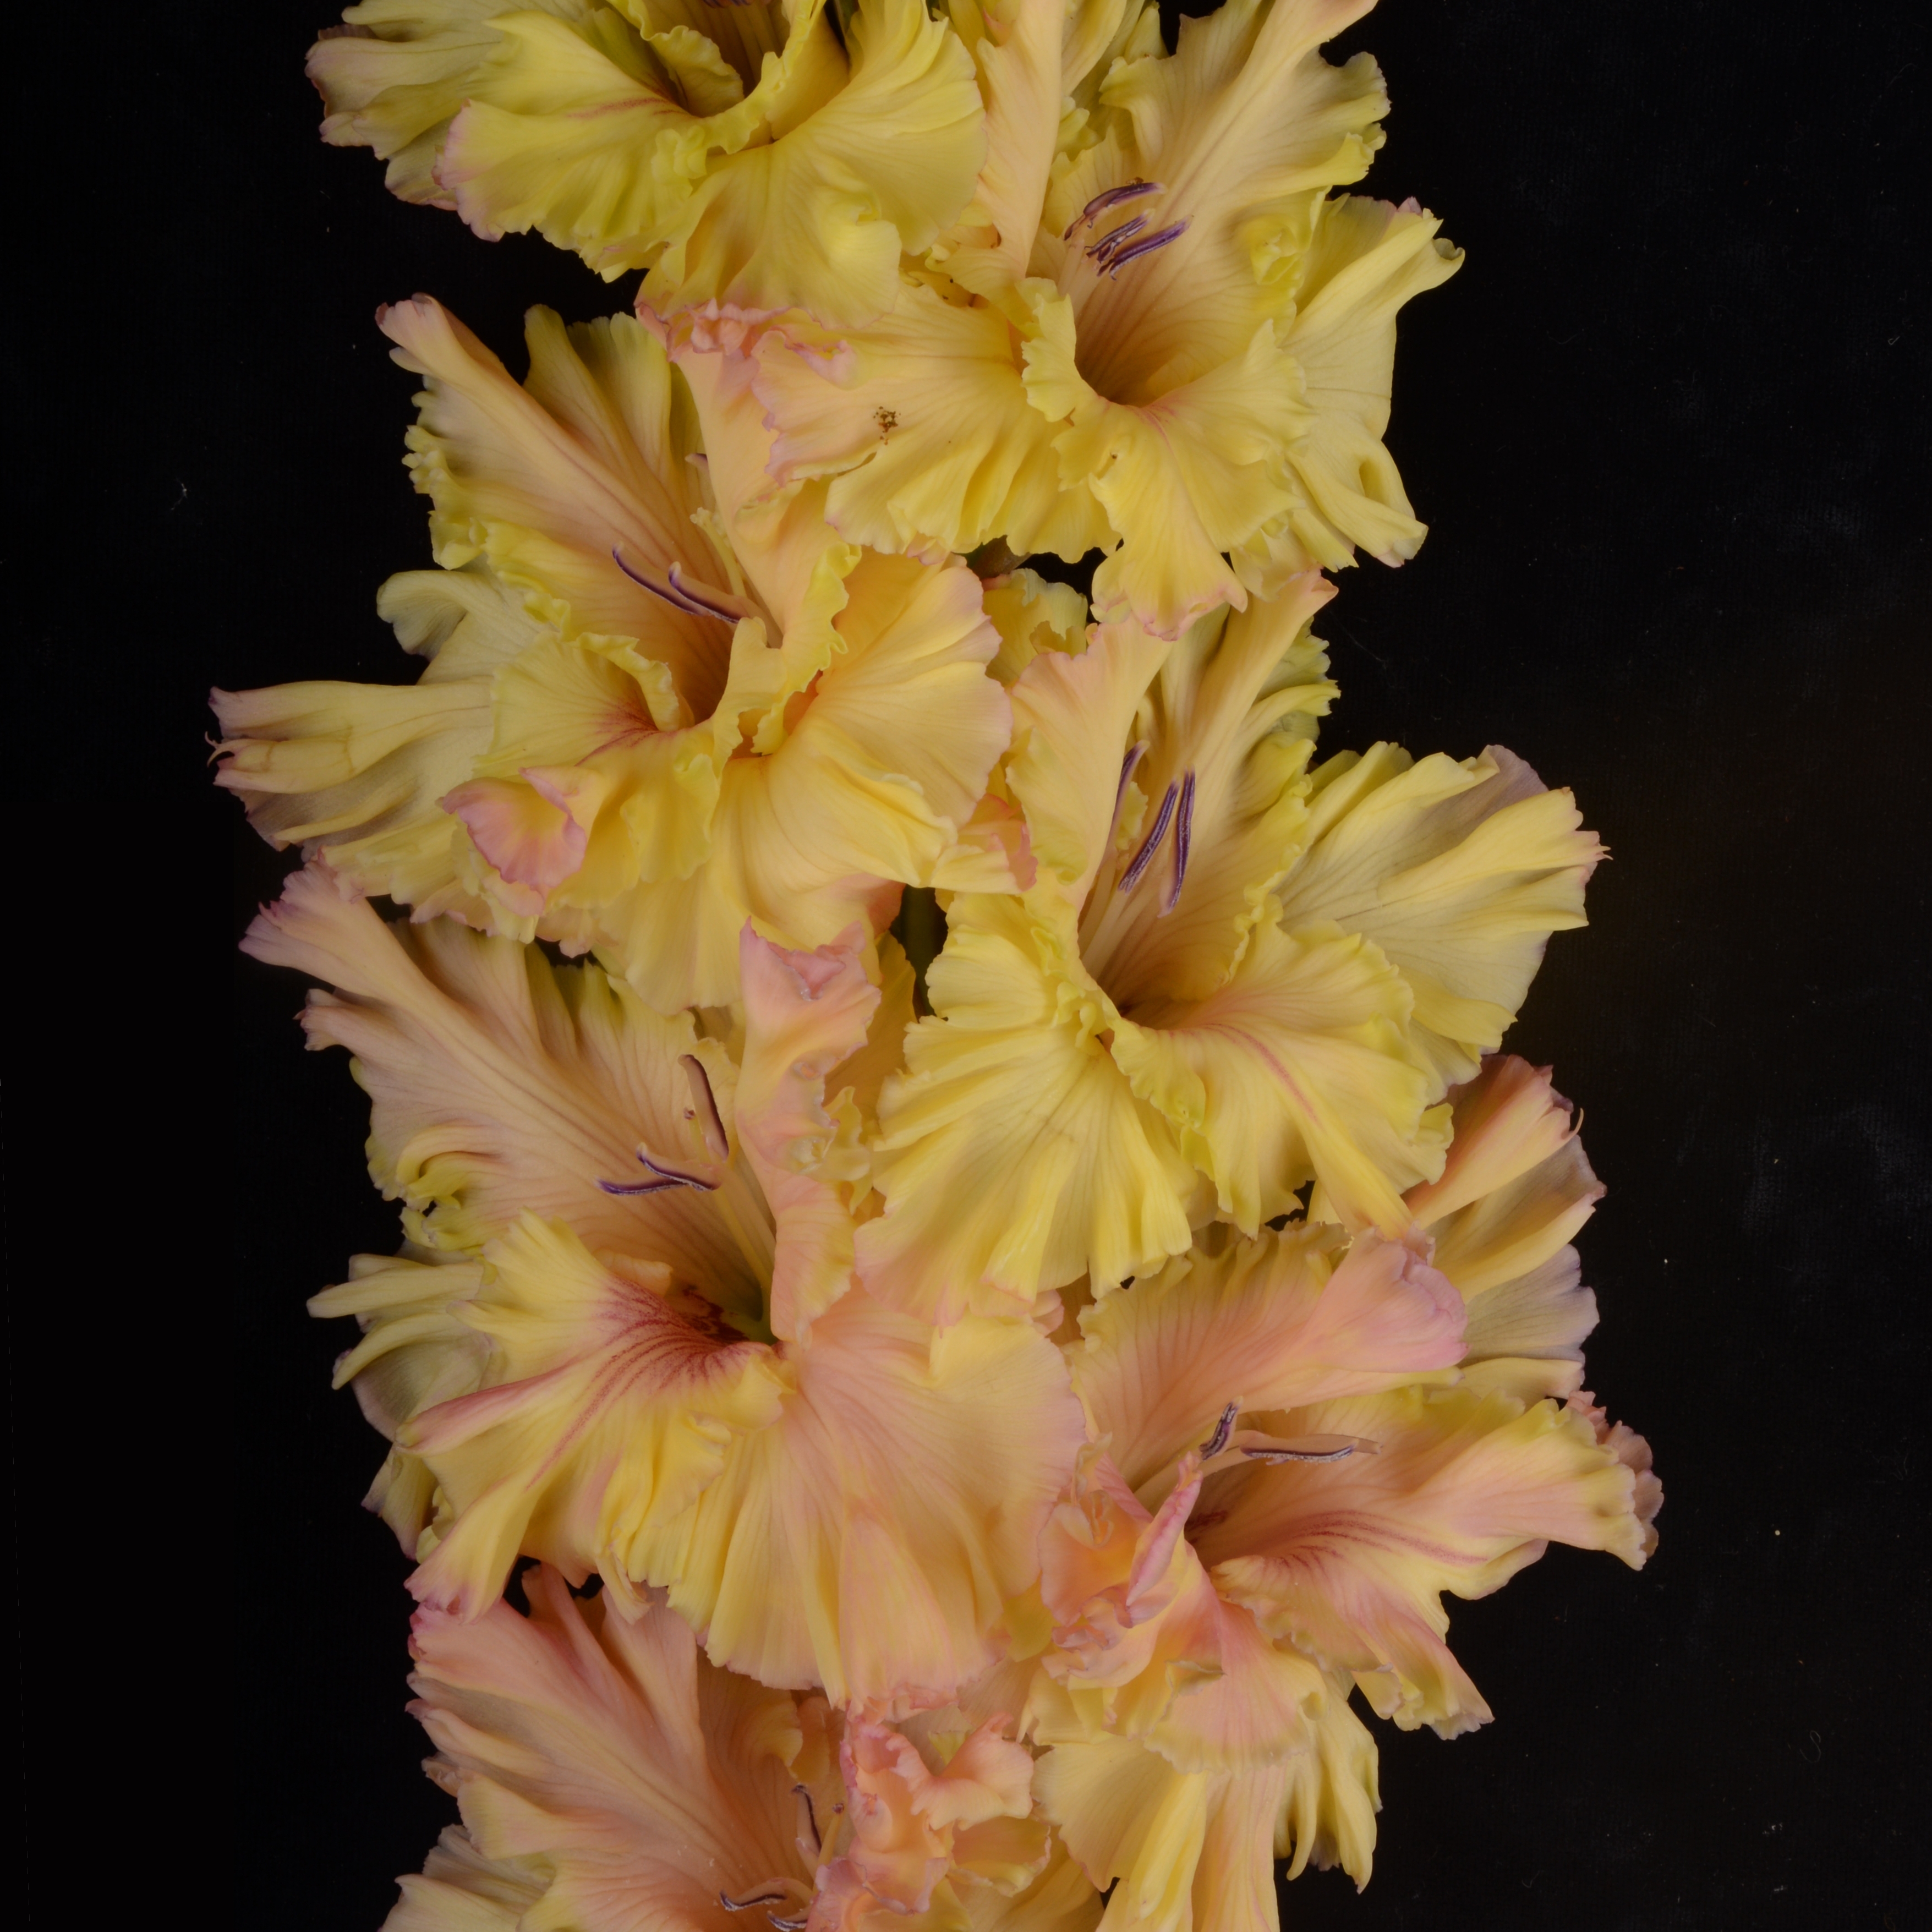 Гладиолус крупноцветковый Неправильный Мед